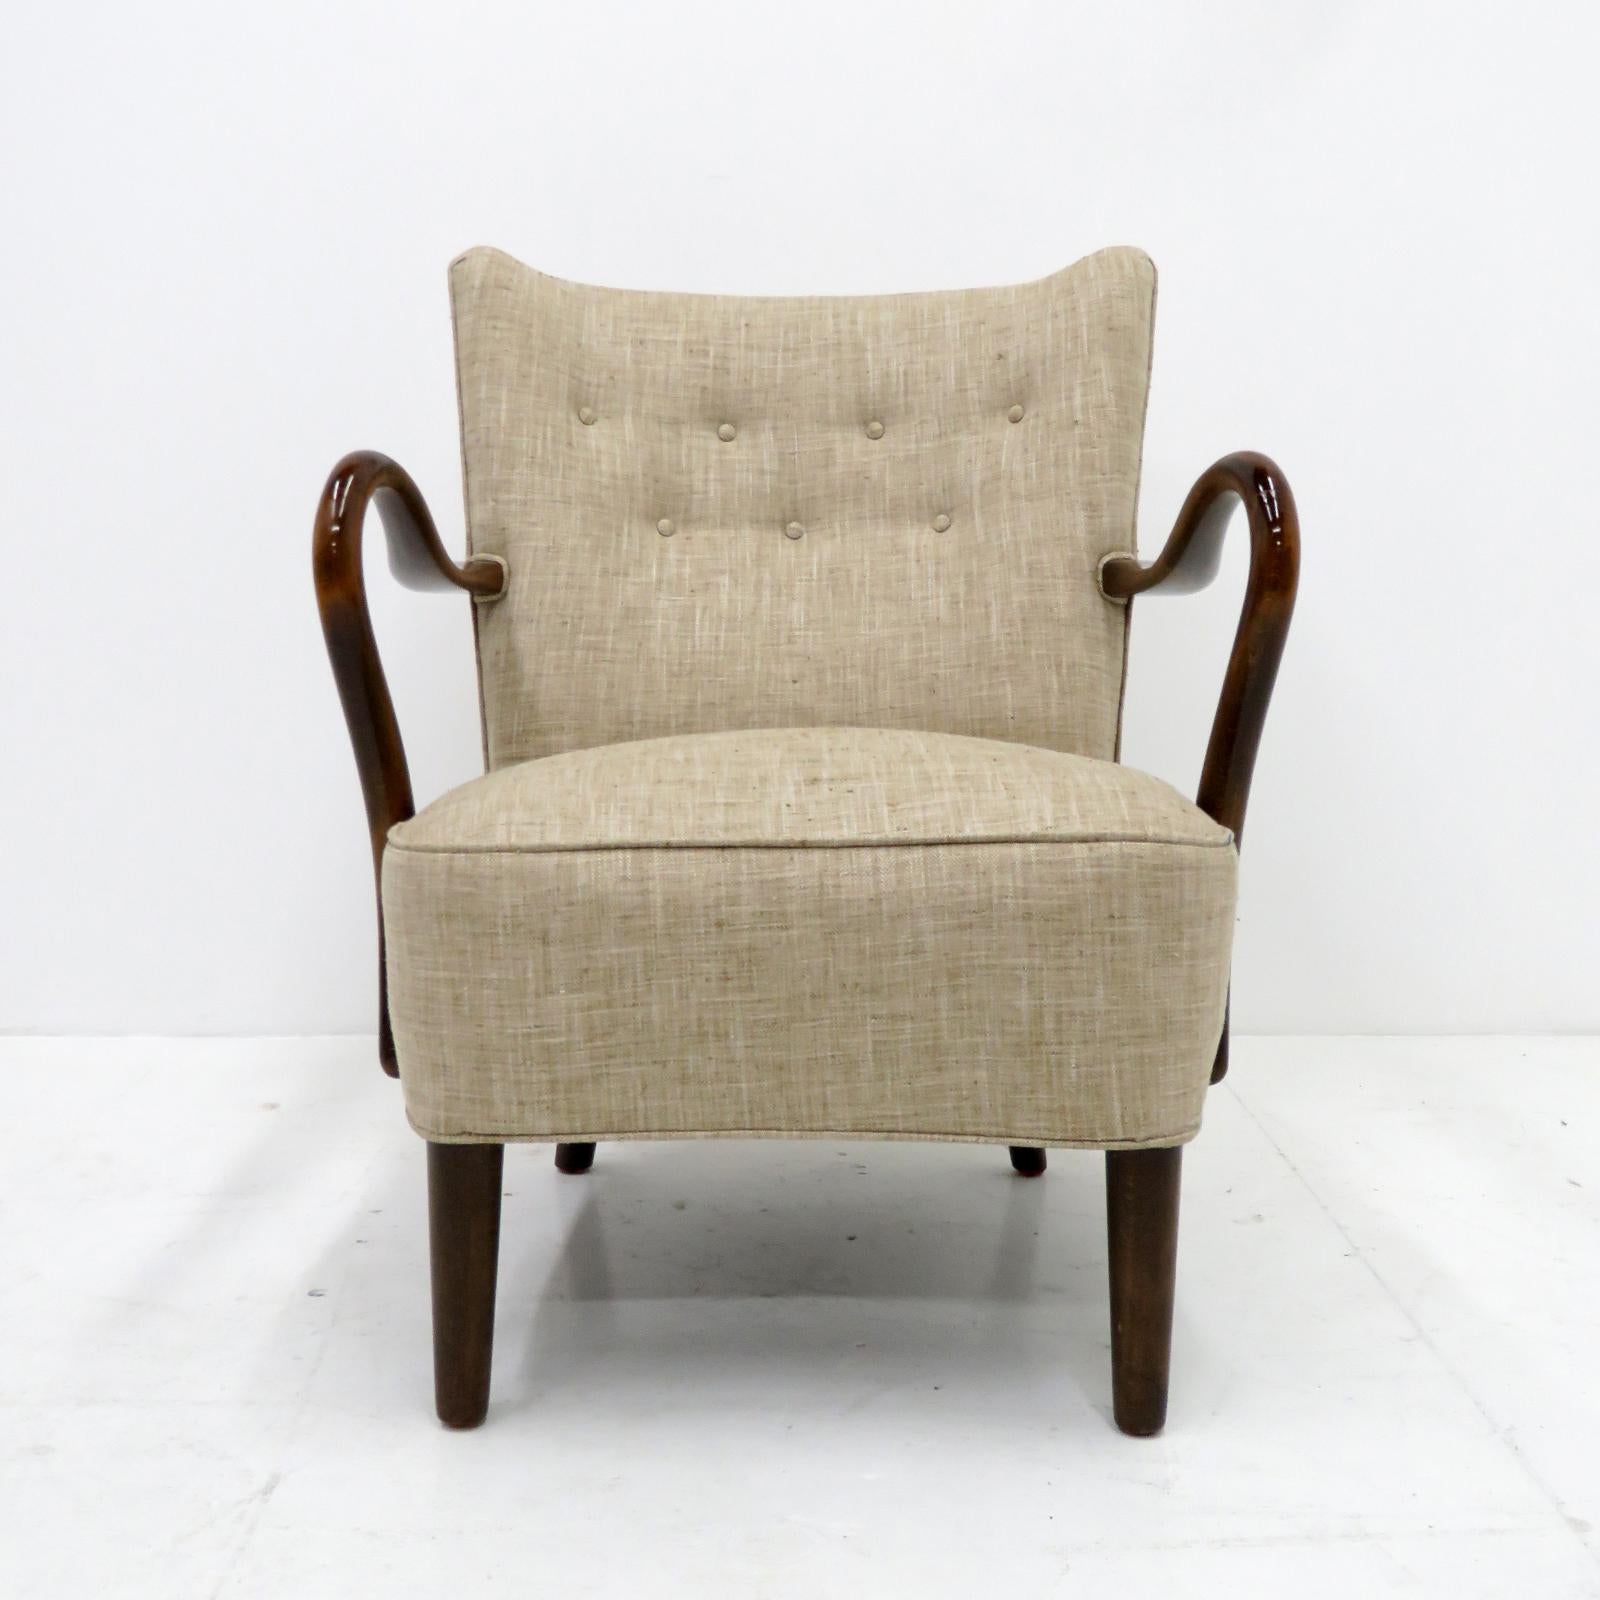 Remarquable fauteuil danois à profil bas, conçu par Alfred Christensen, 1950, fabriqué à Slagelse Profiles, en bois teinté foncé et tapisserie neuve.